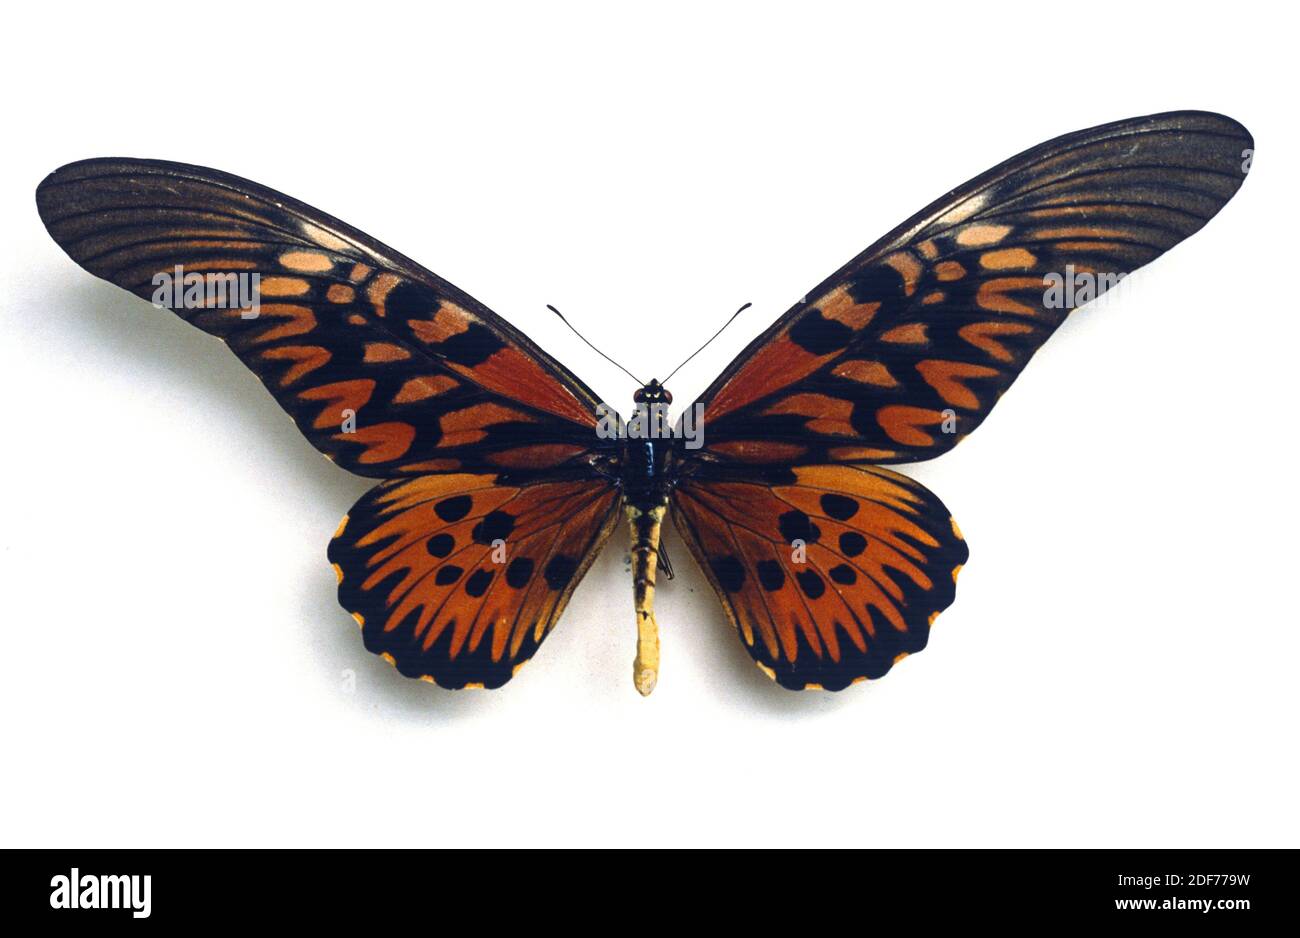 Le géant africain (Papilio antimachus) est un gros papillon originaire d'Afrique centrale et occidentale. Adulte, côté dorsal. Banque D'Images